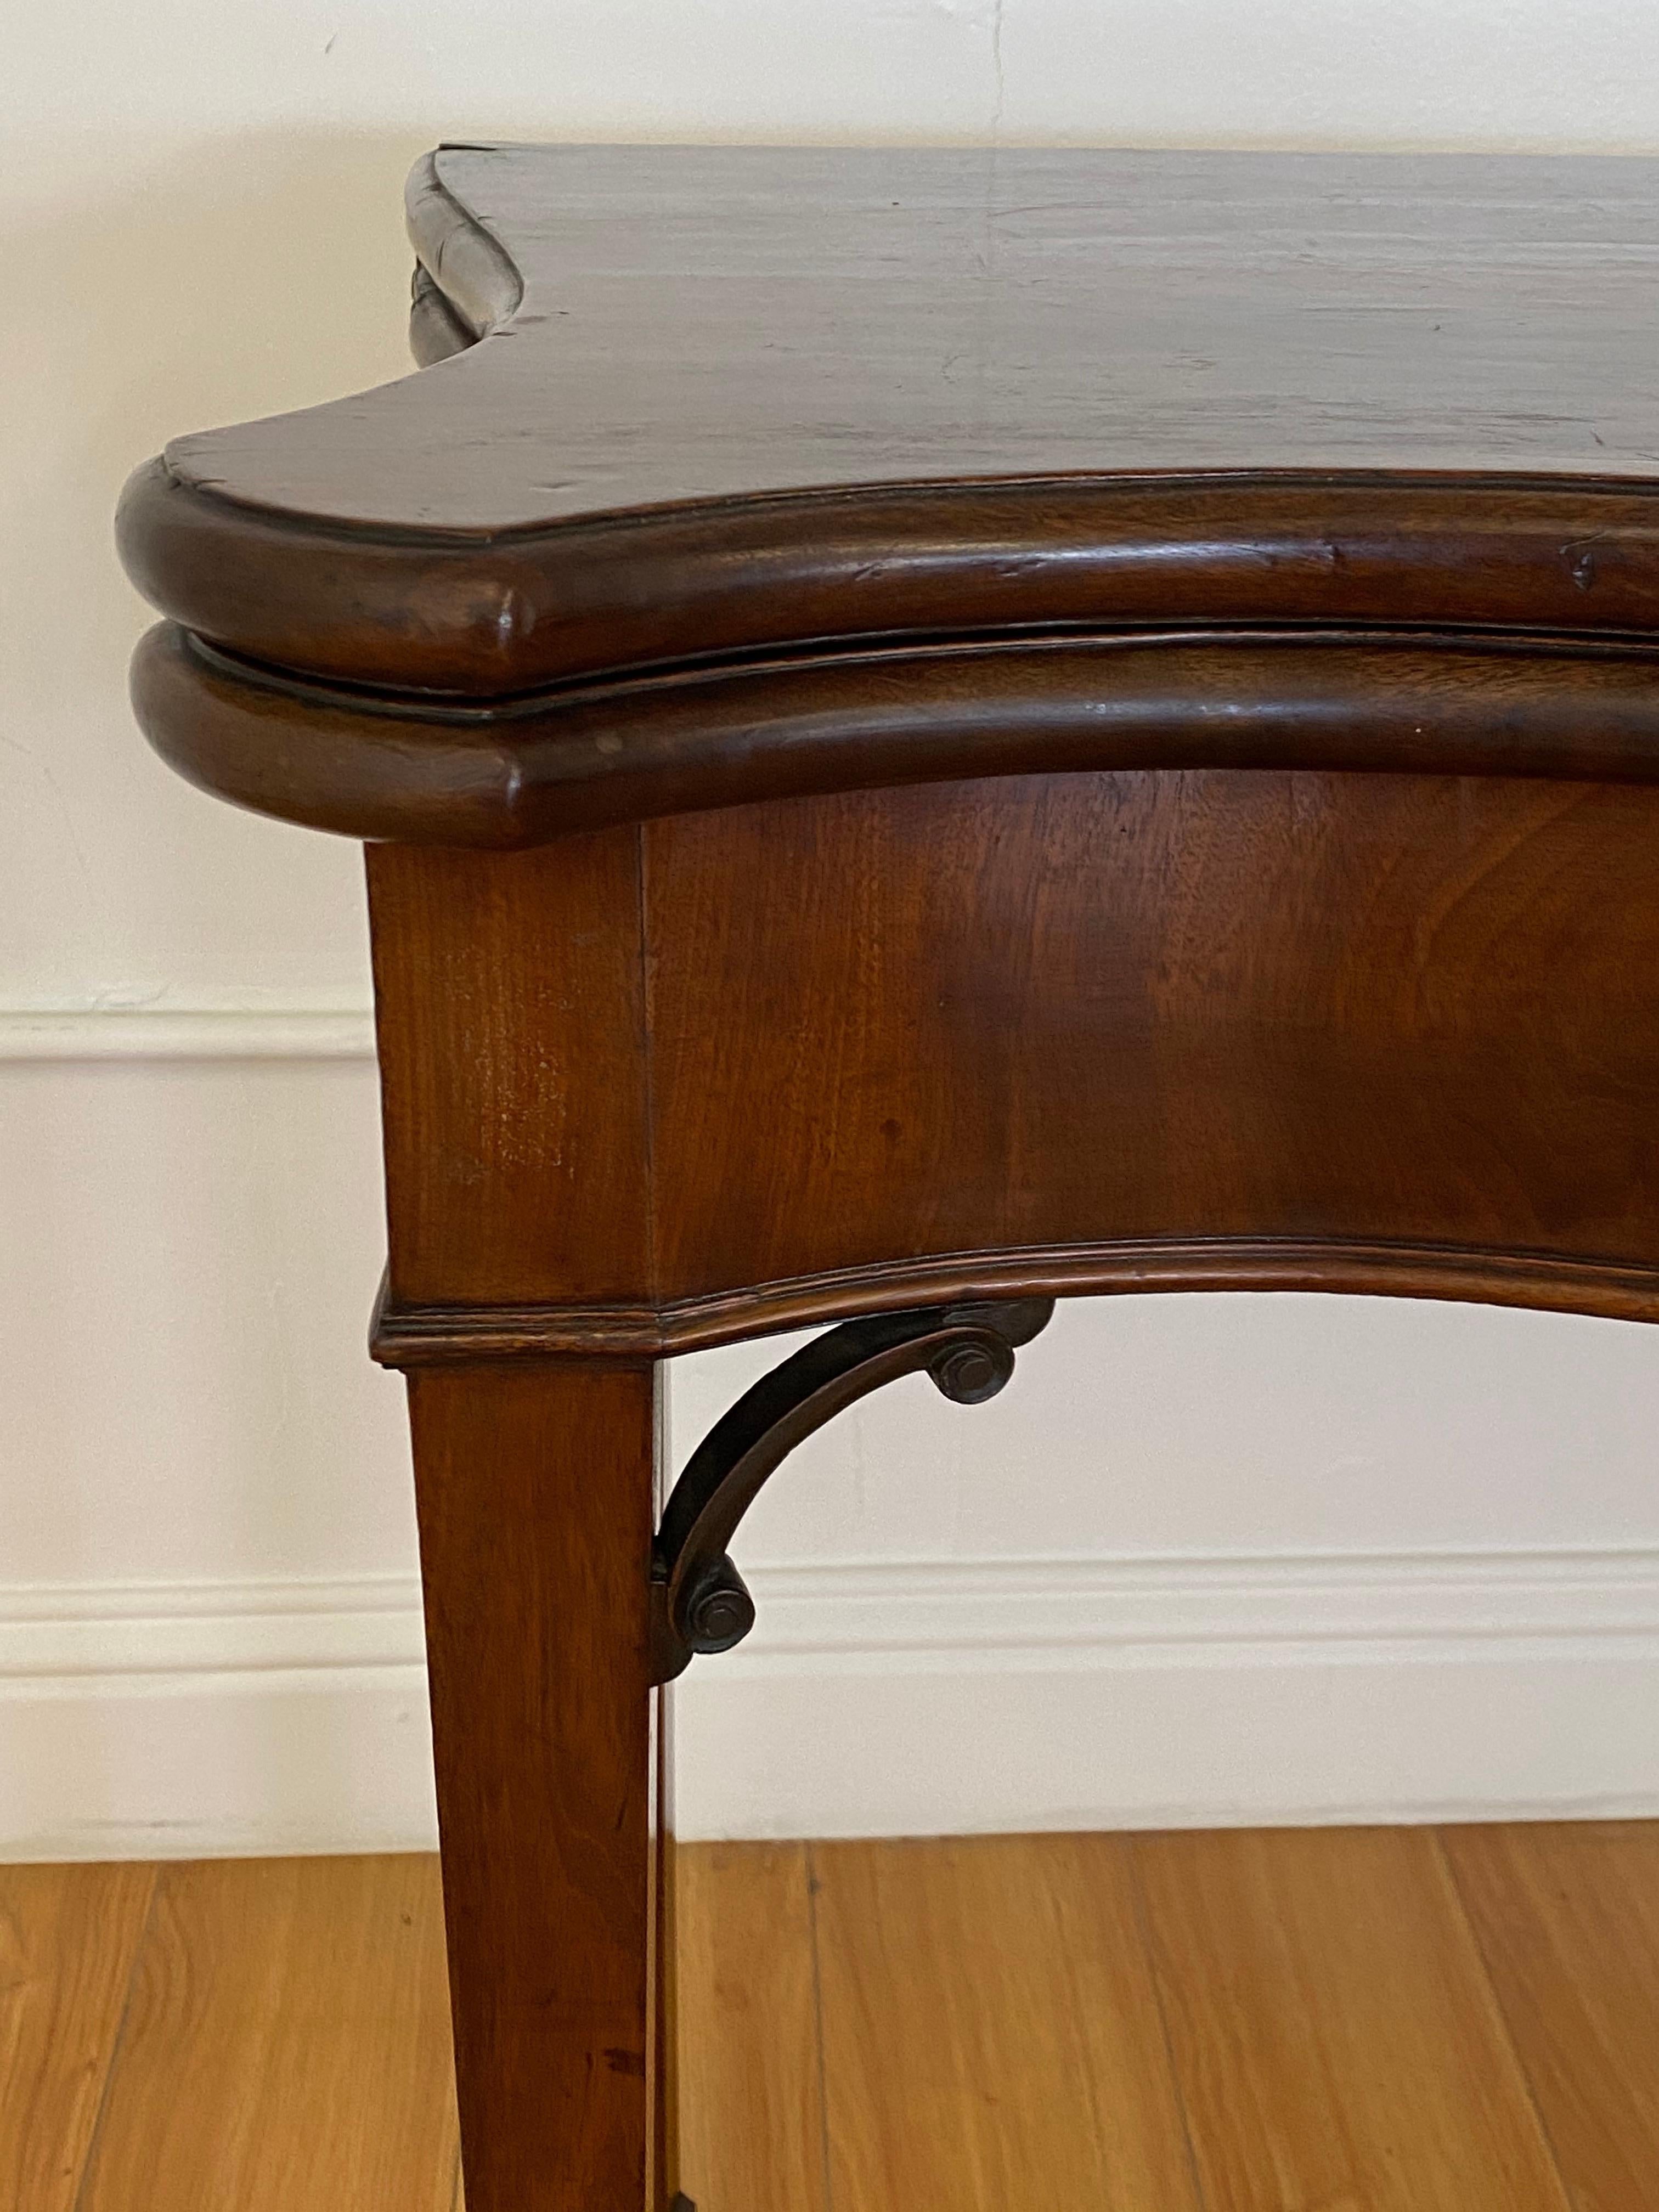 Mahagoni-Konsole aus dem 19. Jahrhundert mit aufklappbarem Spieltisch.

Handgefertigter Flip-Top-Spieltisch mit Filzplatte

Maße: 34